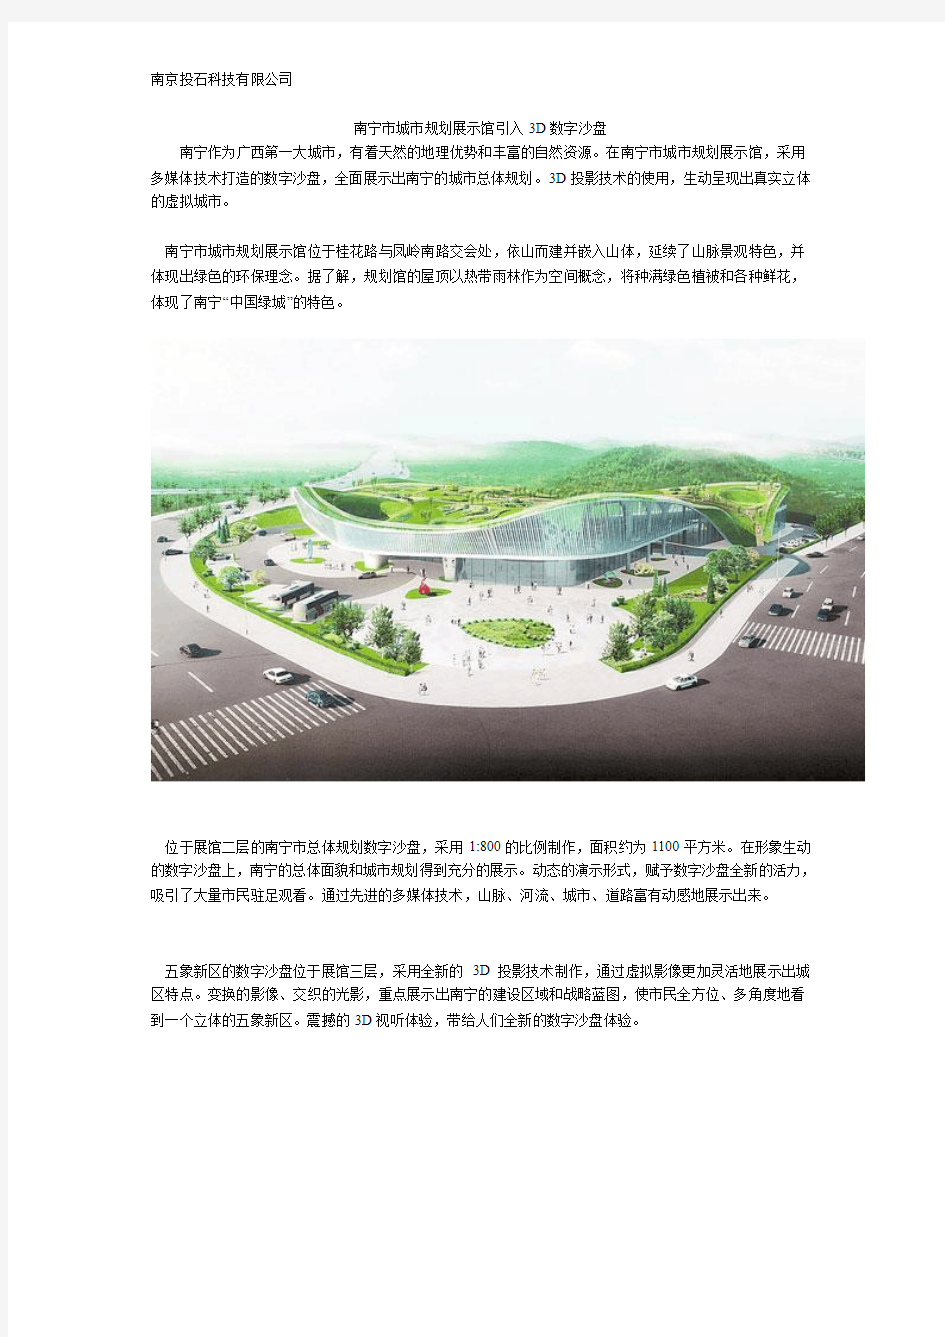 南宁市城市规划展示馆引入3D数字沙盘